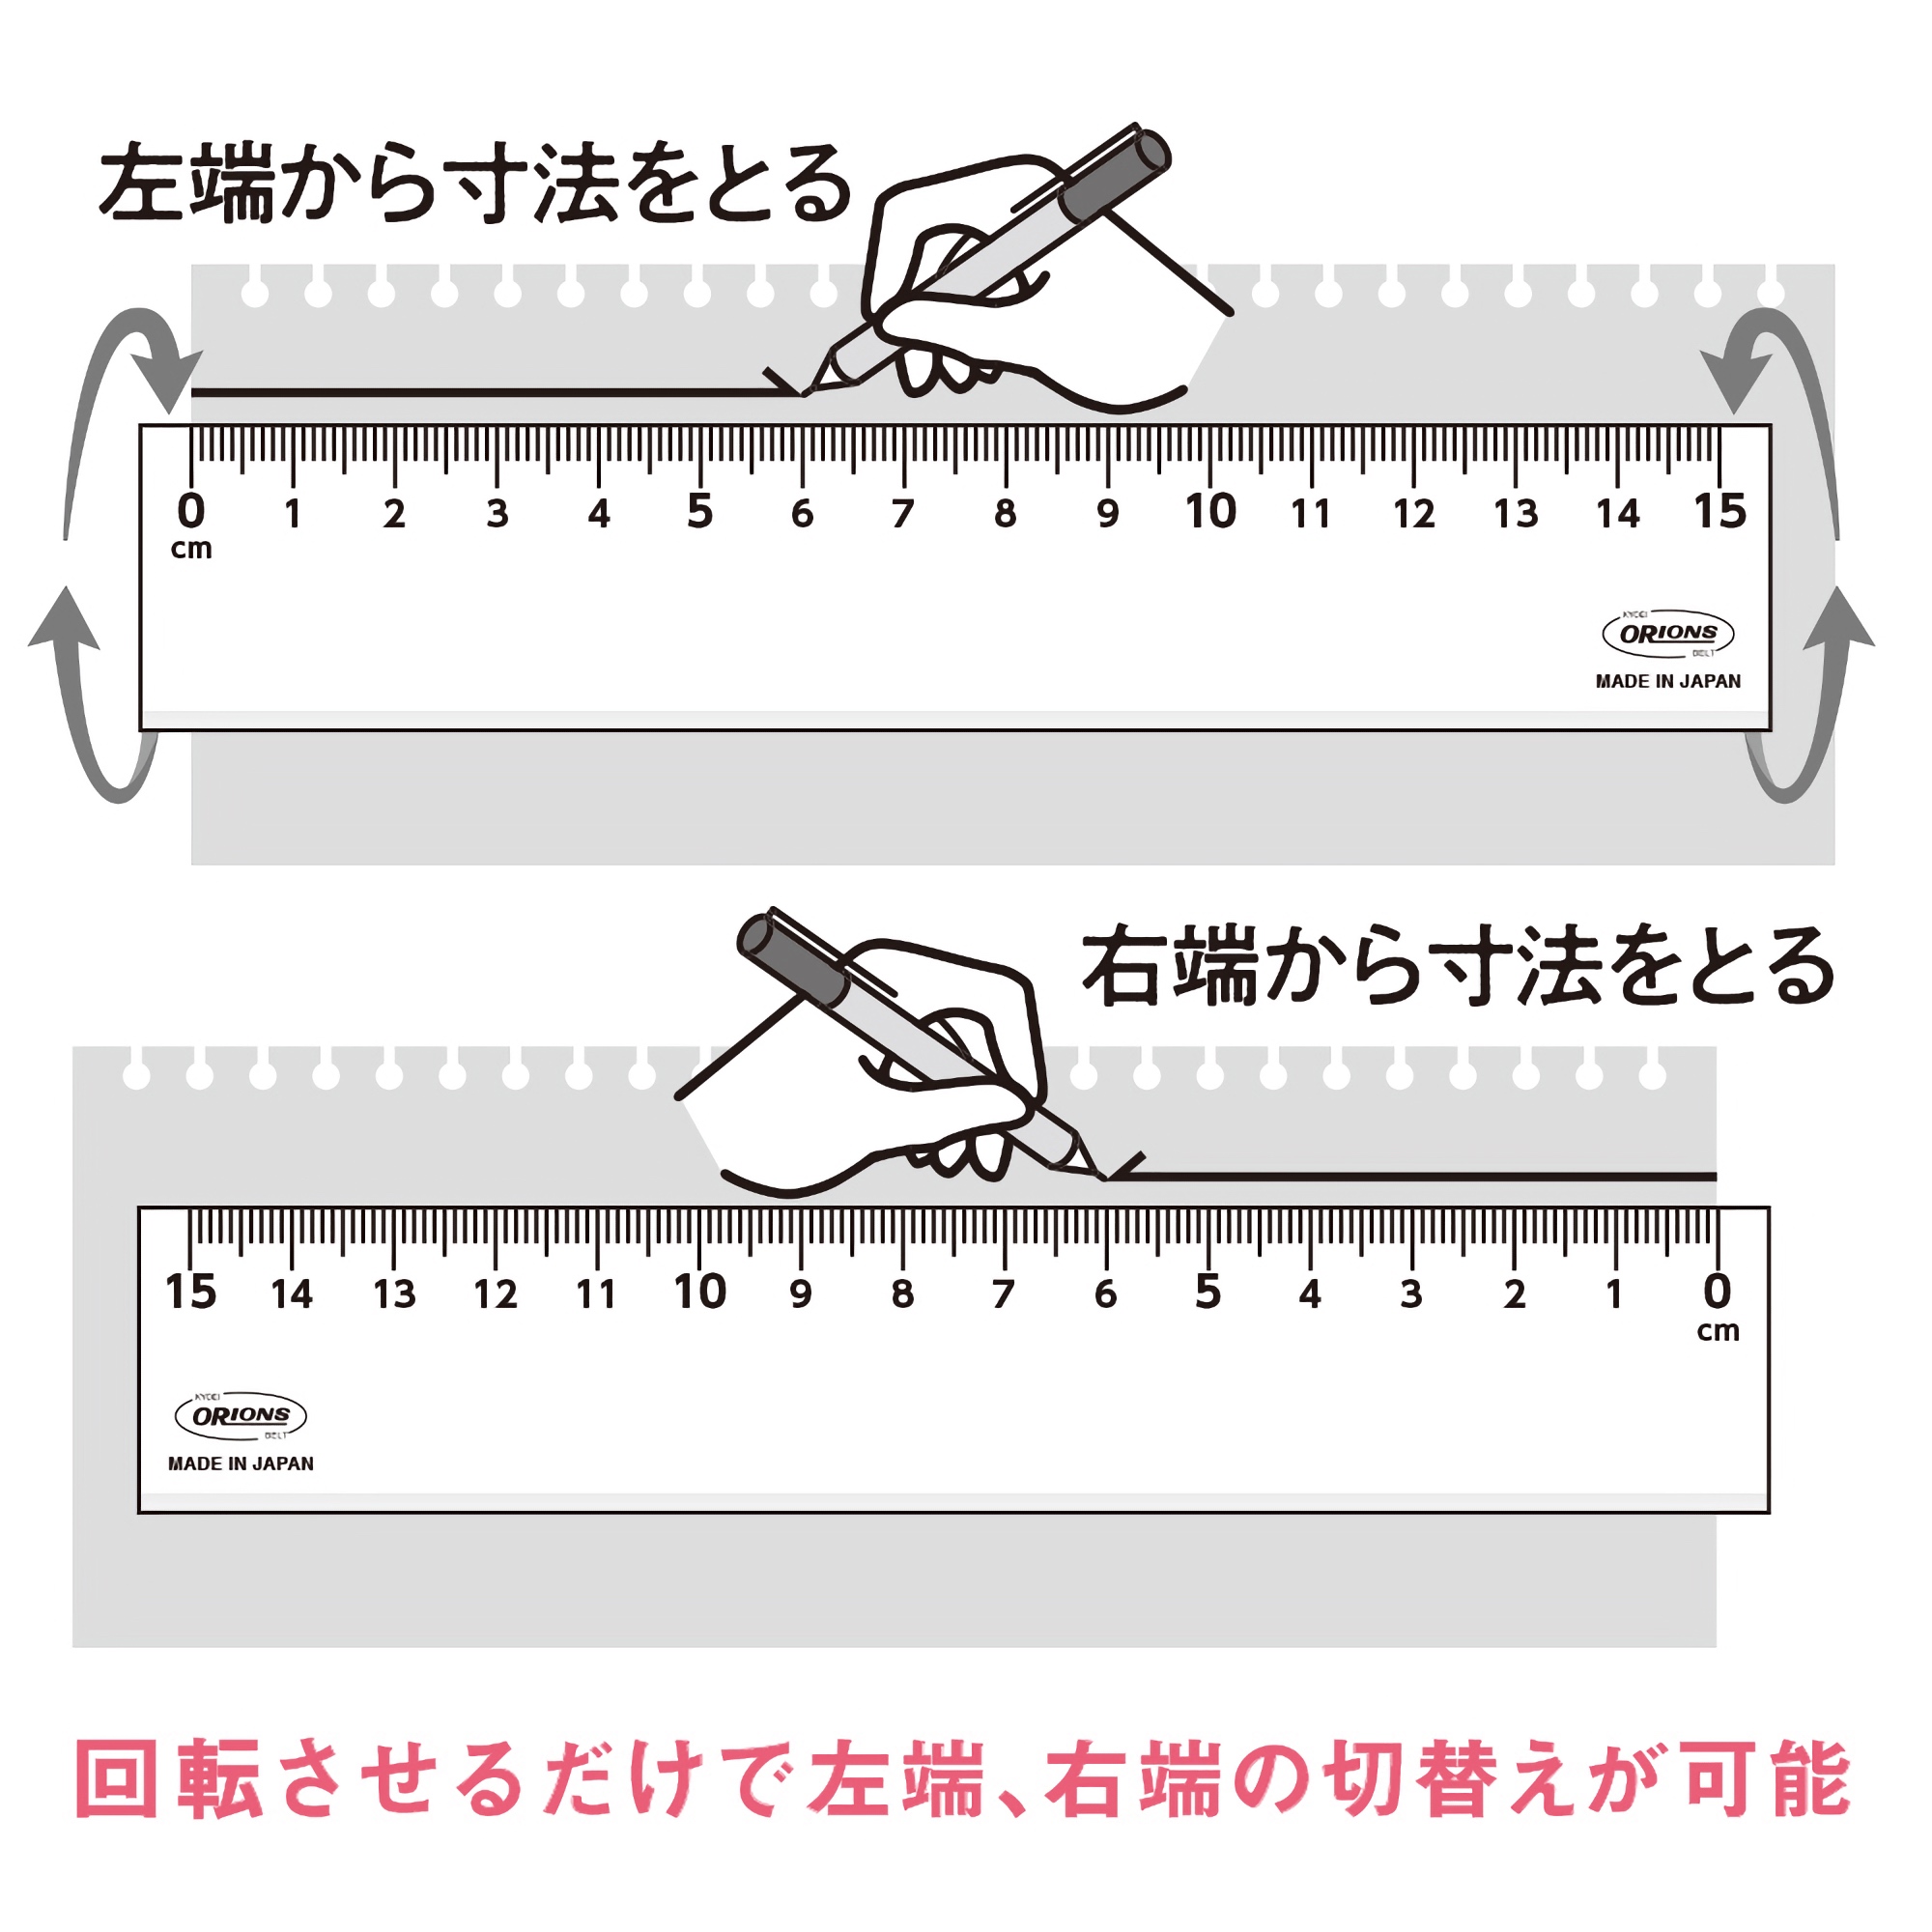 Kyoei Orions LR Left & Right Handed Ruler 15 cm White